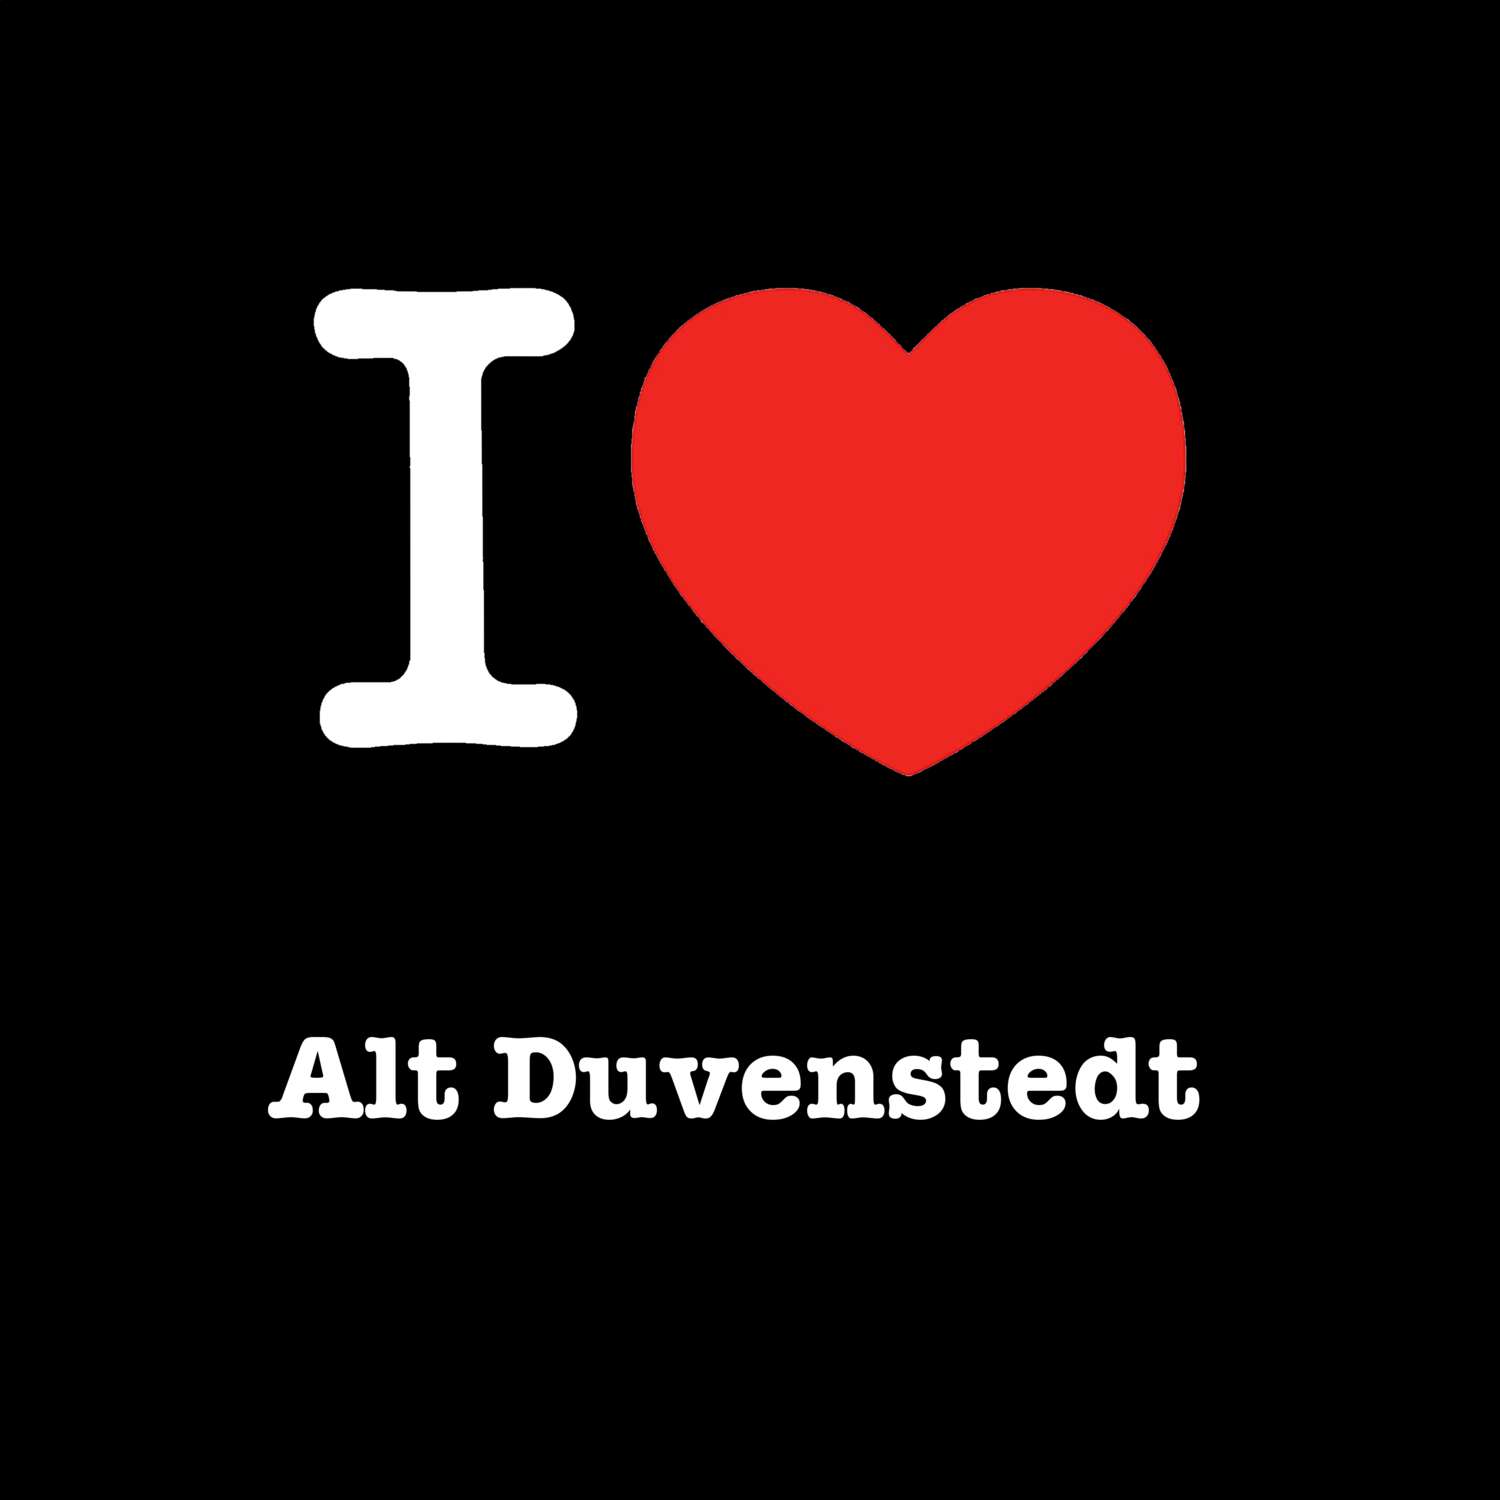 Alt Duvenstedt T-Shirt »I love«